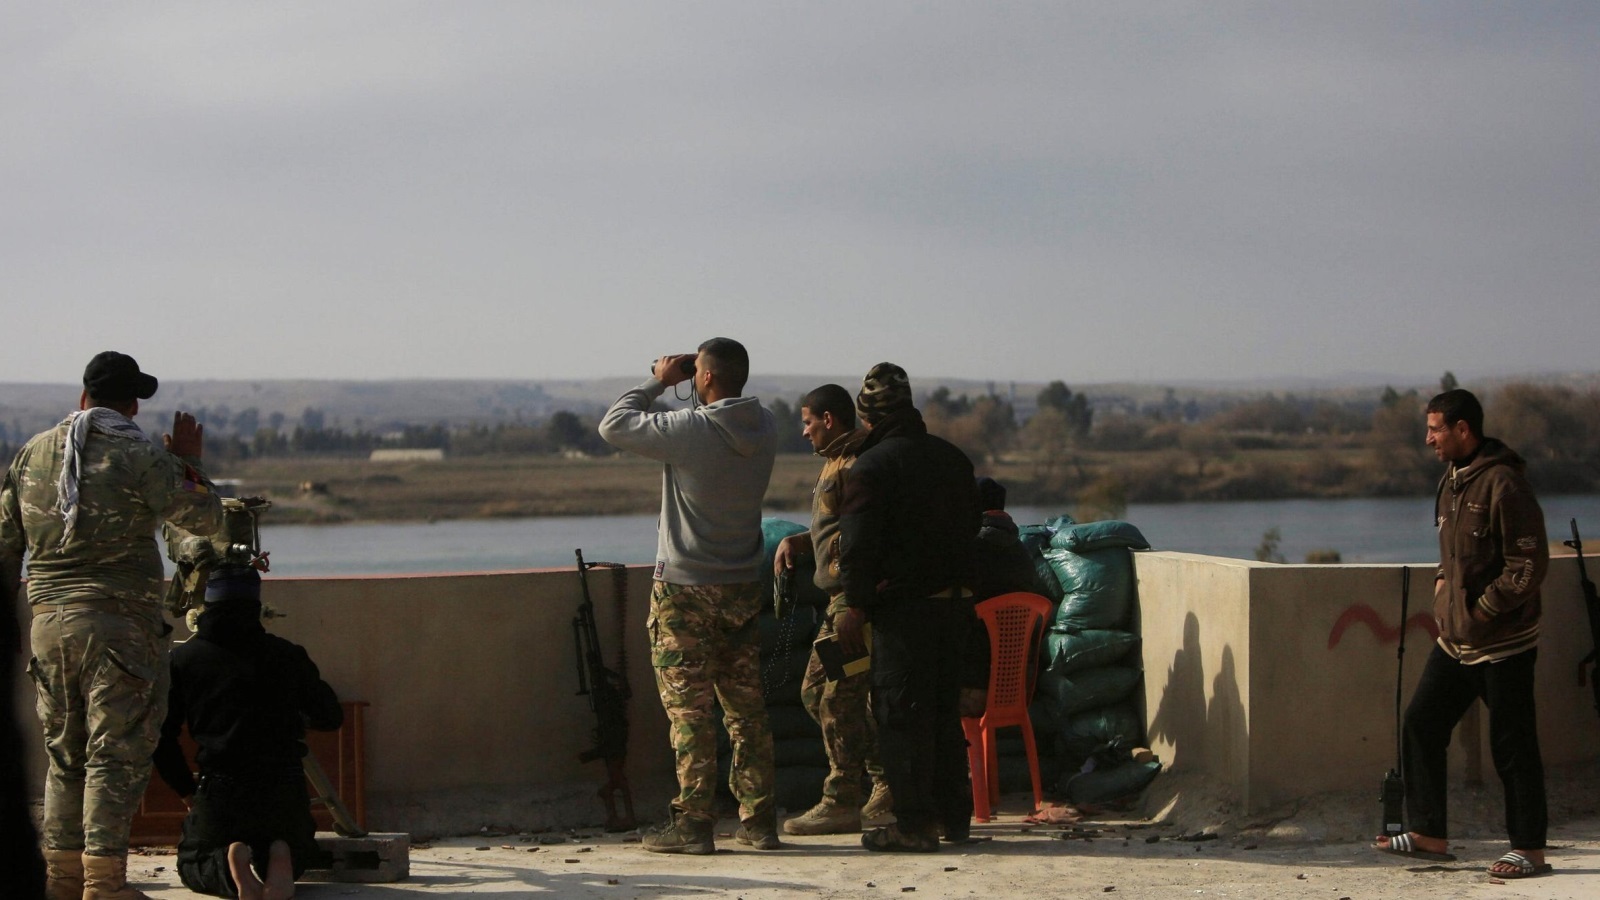 عناصر من قوات الرد السريع العراقية في موقع قريب من الضفة الغربية لنهر دجلة في الموصل  (رويترز)